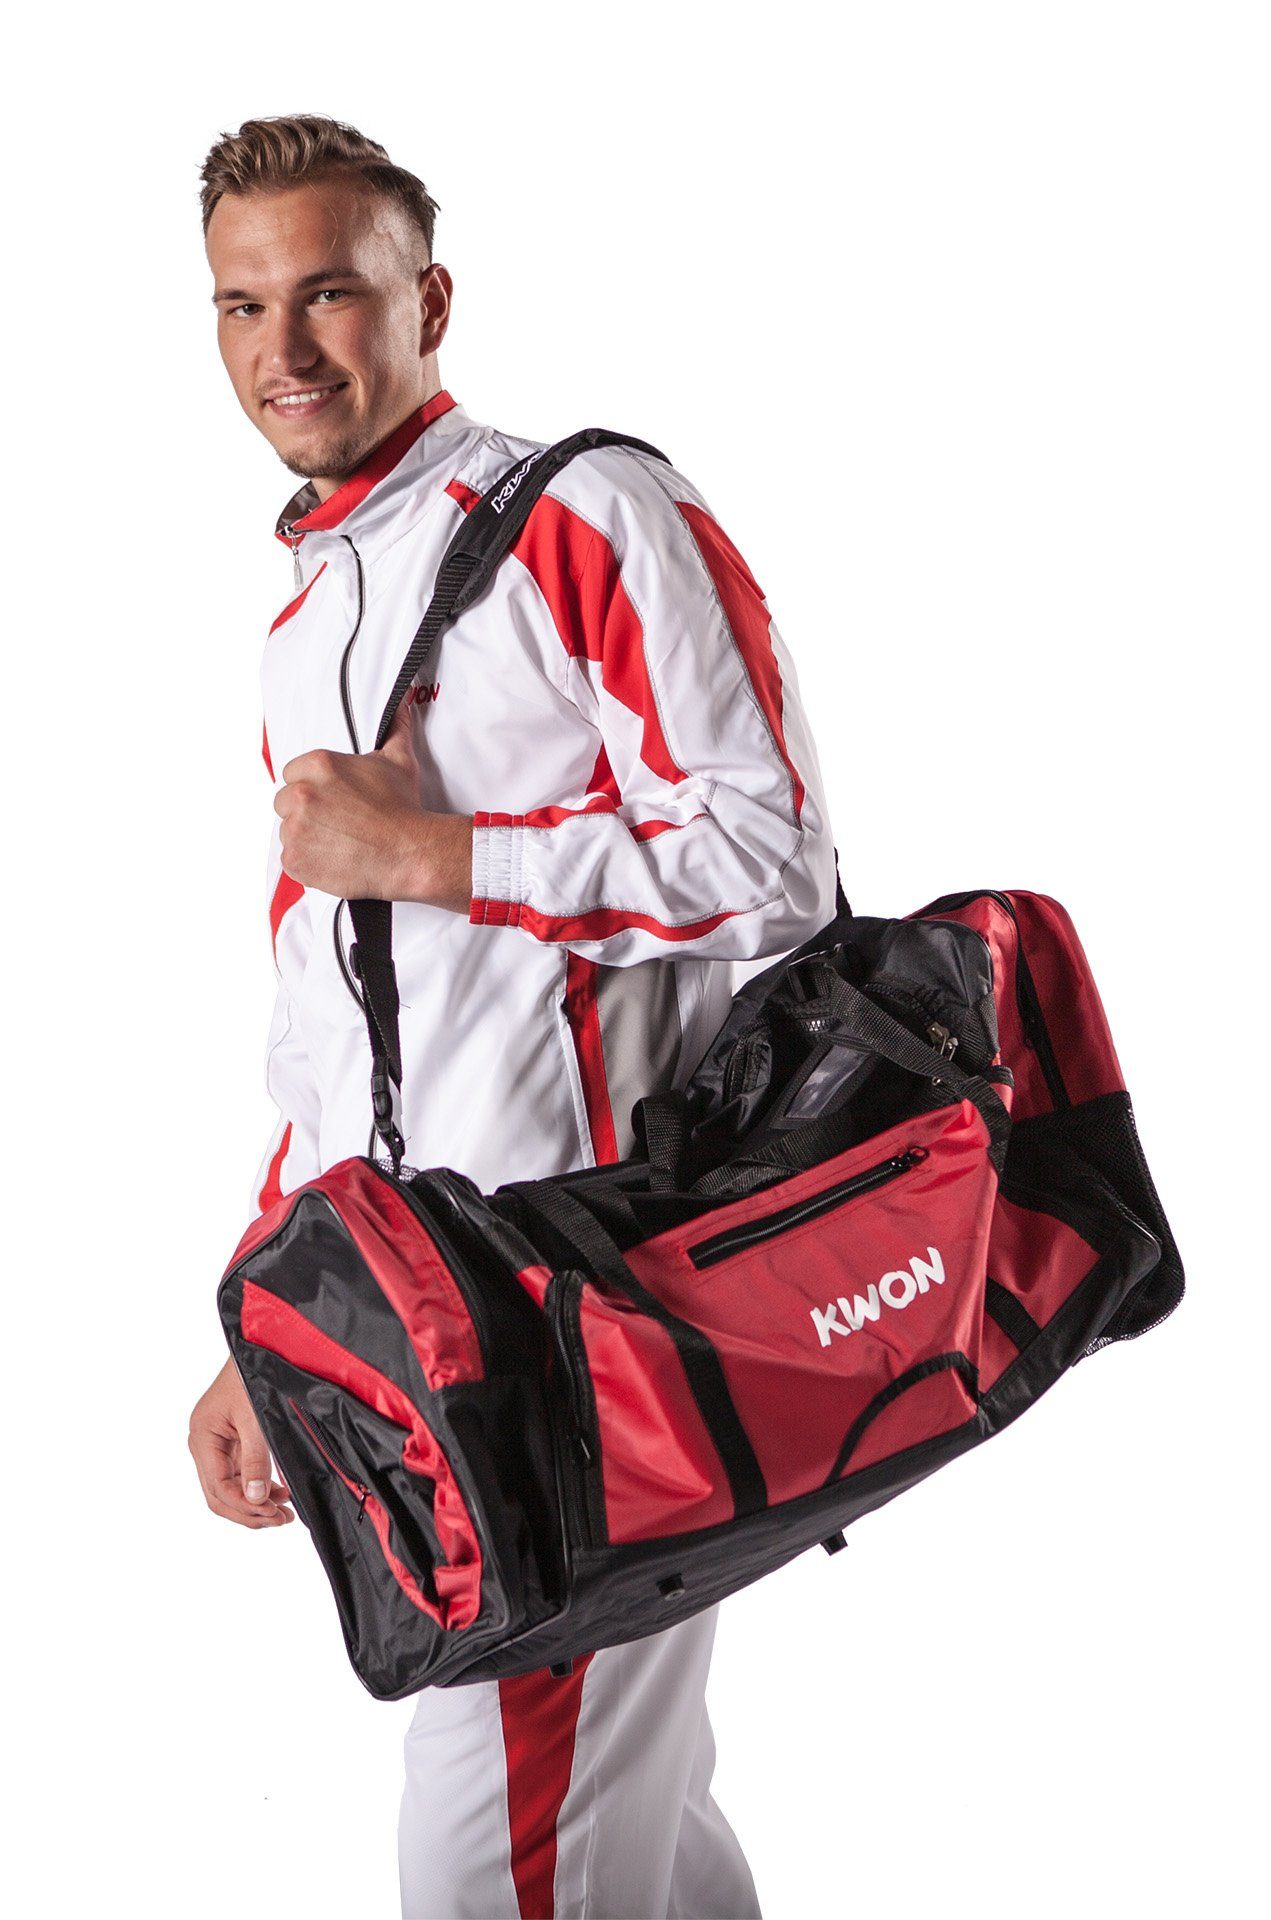 KWON Sporttasche Evolution schwarz rot 70 cm Taekwondo TKD Trainingstasche  (Lieblingstasche, 2 Farben), Sehr viele praktische Fächer, geräumig,  Nassfach